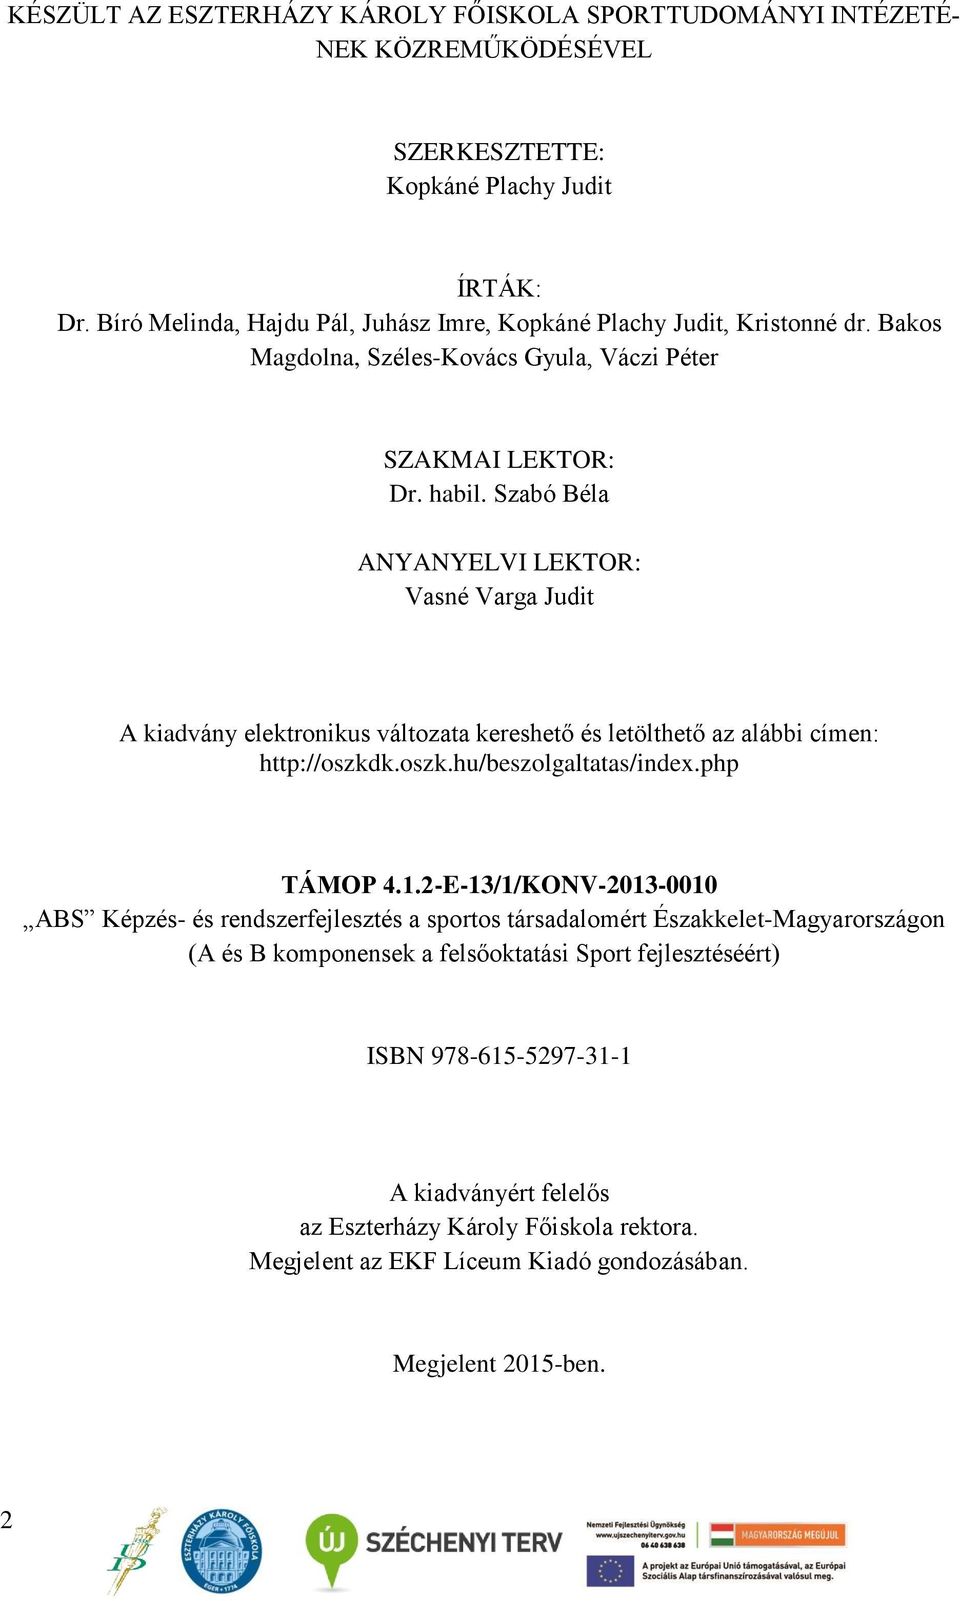 Szabó Béla ANYANYELVI LEKTOR: Vasné Varga Judit A kiadvány elektronikus változata kereshető és letölthető az alábbi címen: http://oszkdk.oszk.hu/beszolgaltatas/index.php TÁMOP 4.1.